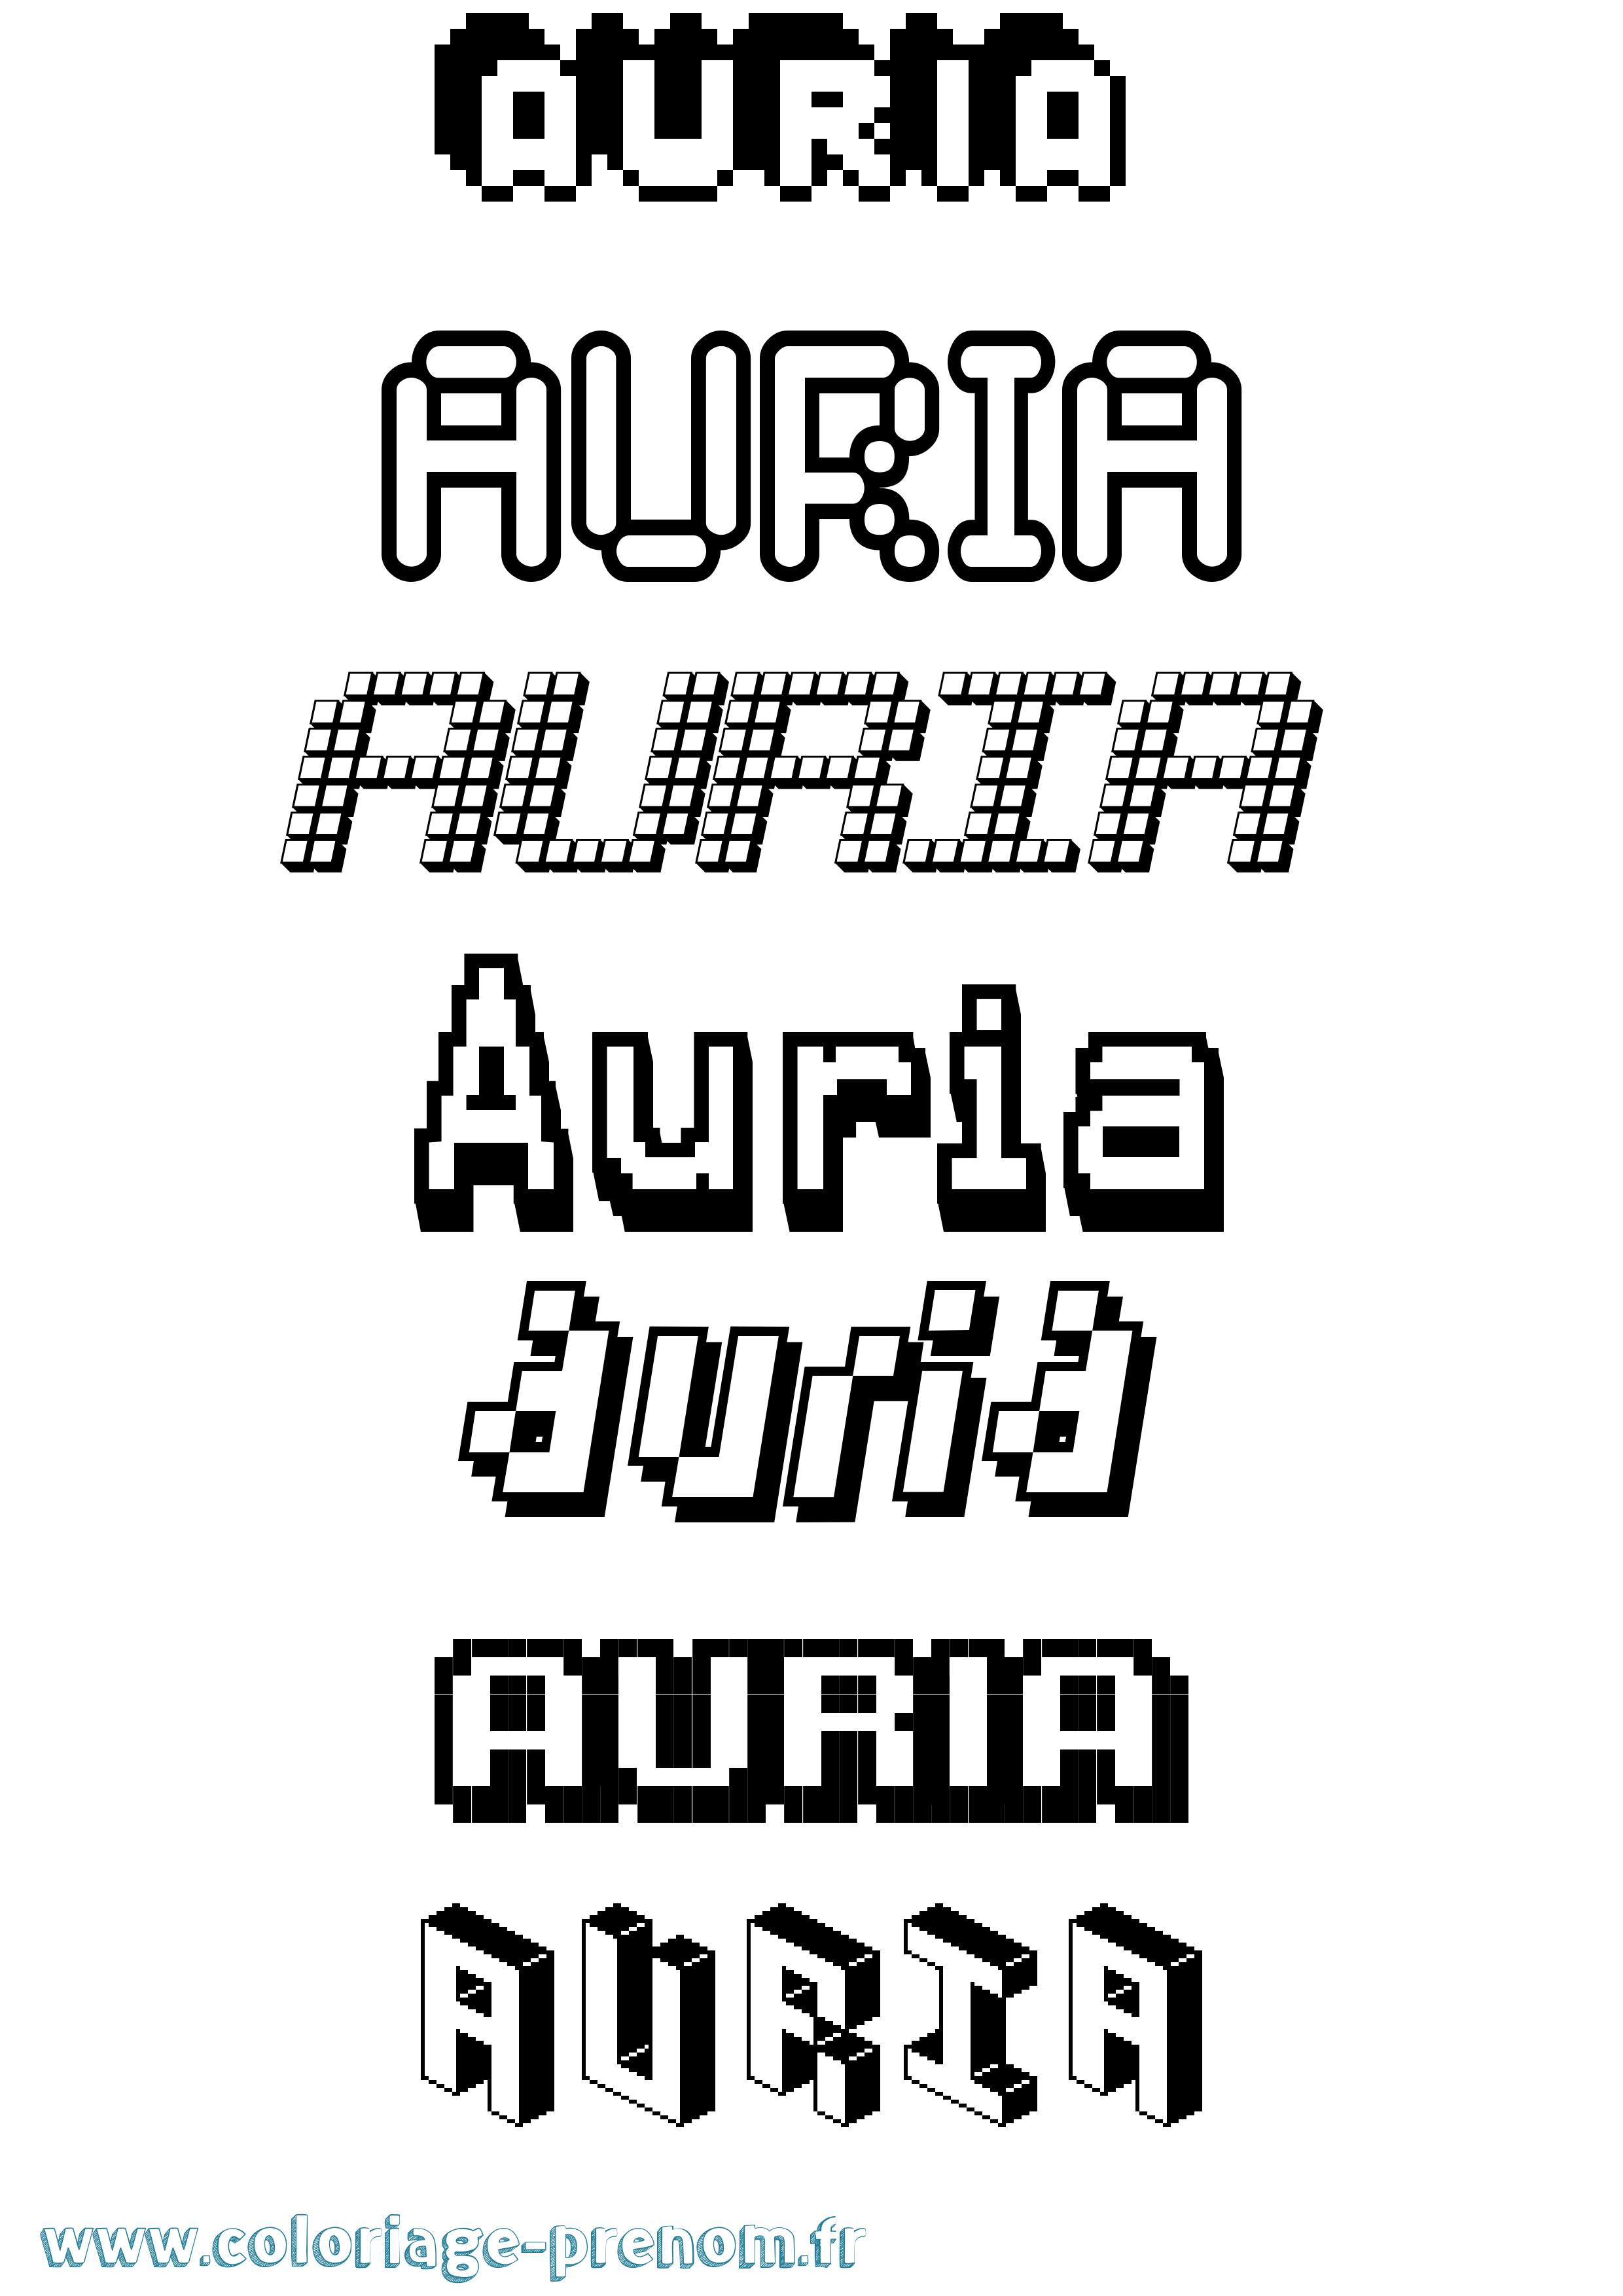 Coloriage prénom Auria Pixel